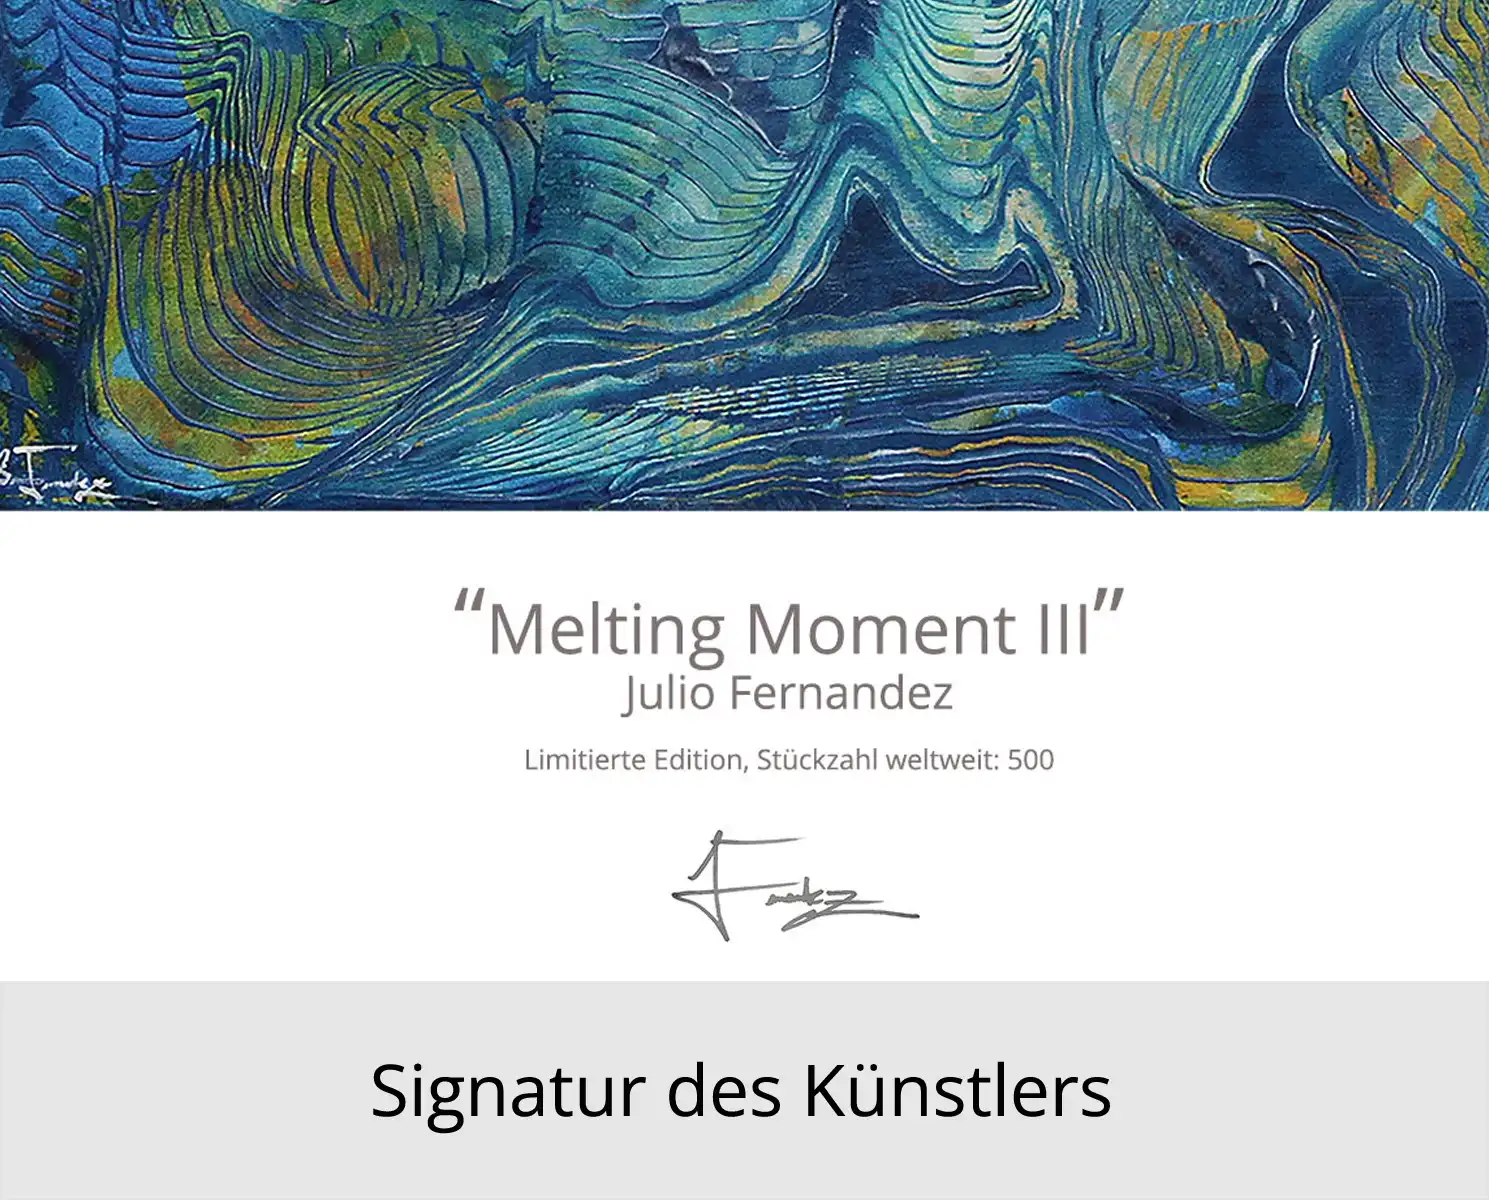 Limitierte Edition auf Papier, J. Fernandez "Melting Moment III", Fineartprint